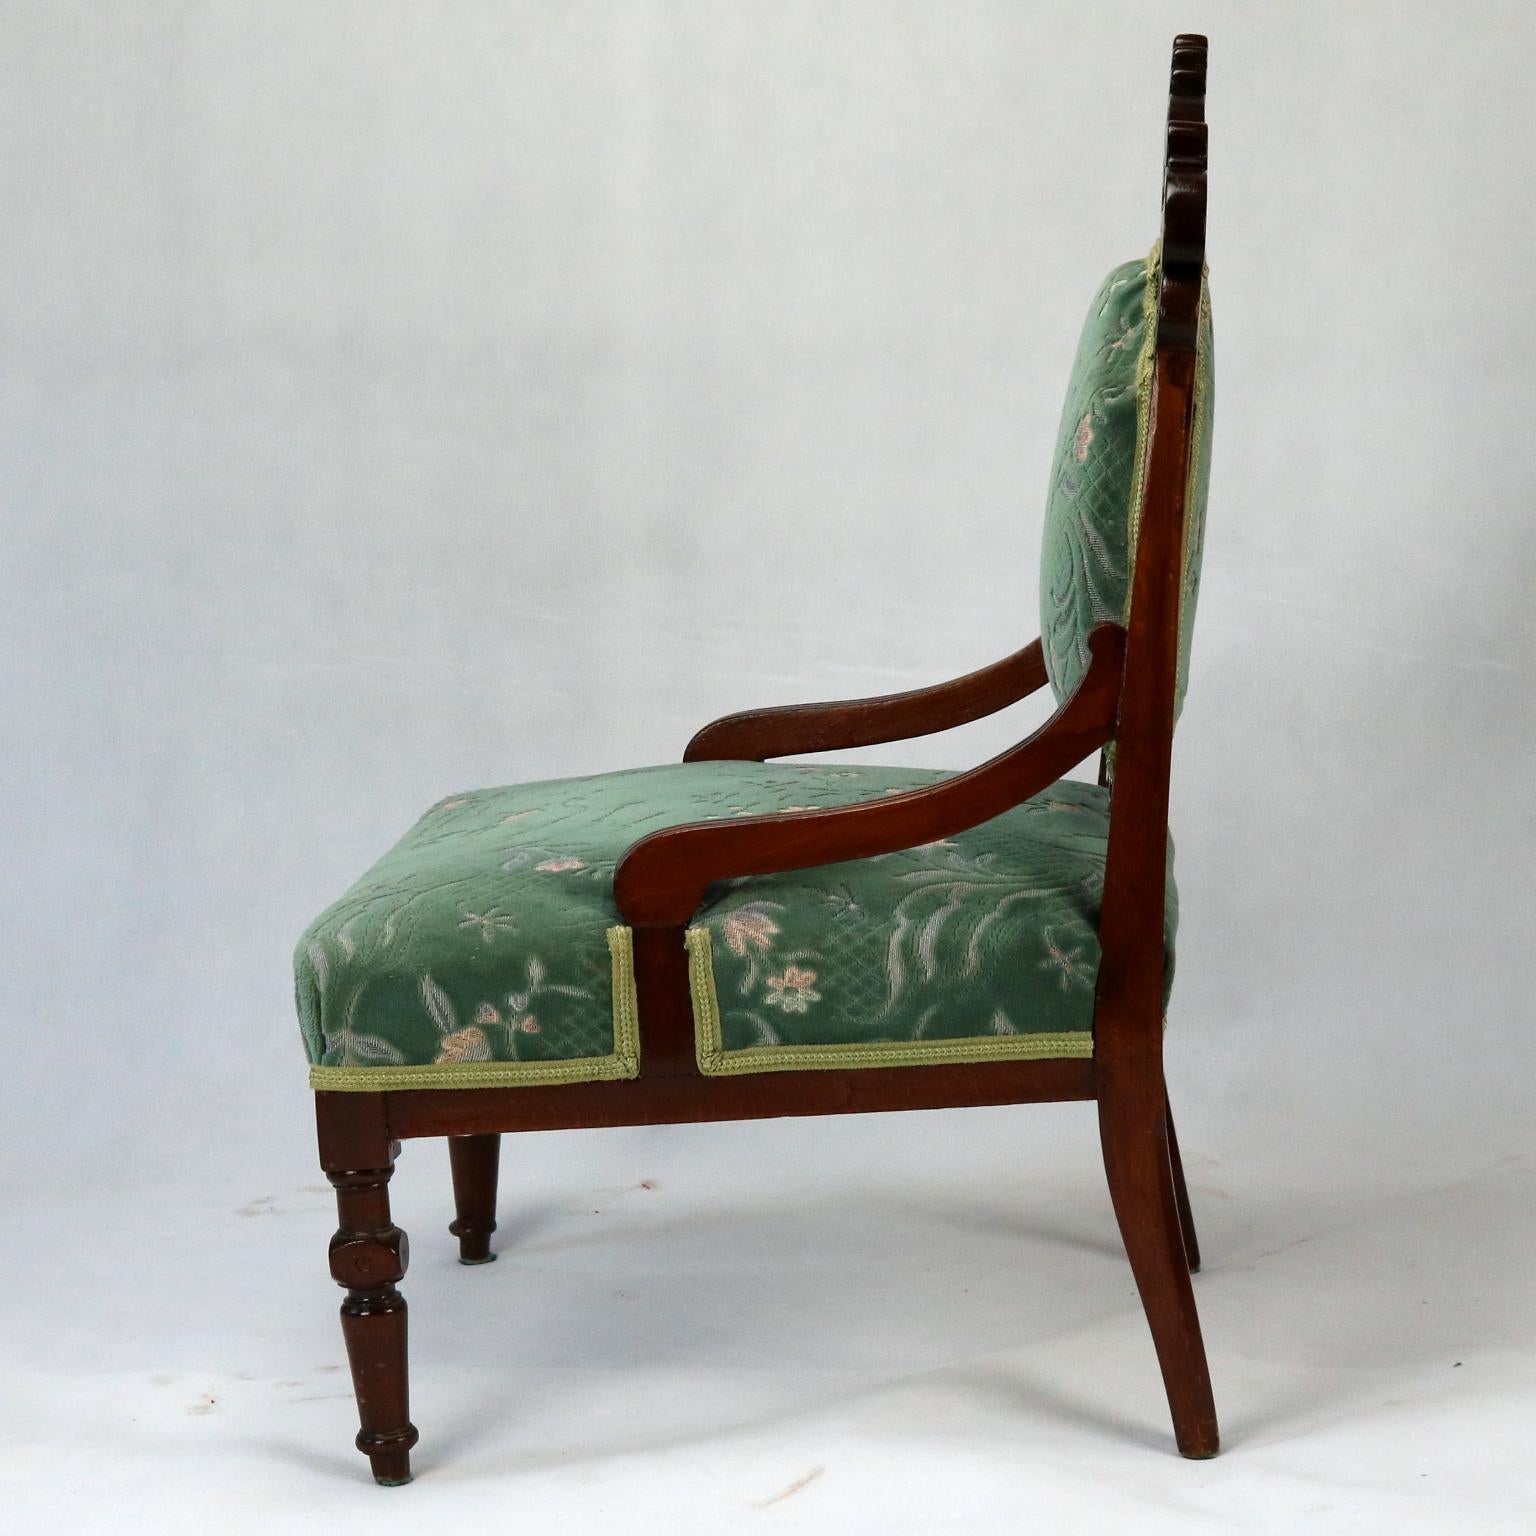 Geschnitzte Sessel aus Buche, spätes 19. Jahrhundert (Handgeschnitzt)